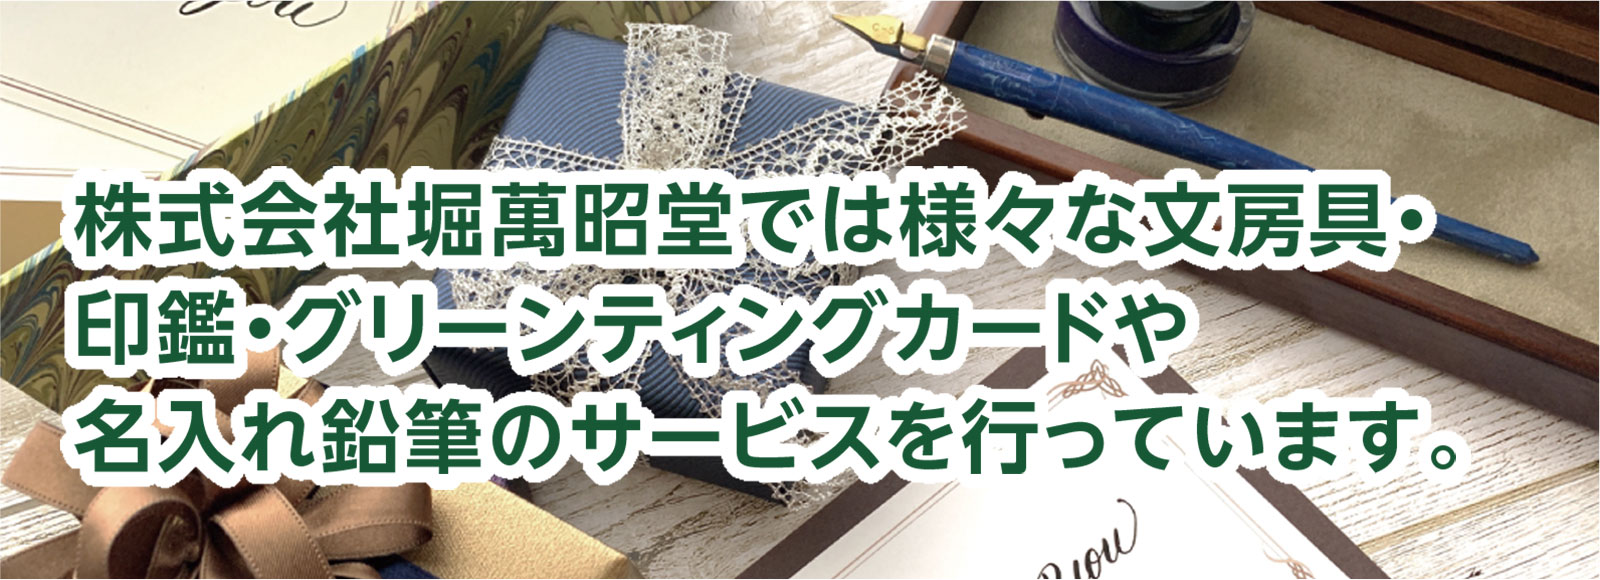 株式会社堀萬昭堂では様々な文房具・印鑑・グリーンティングカードや名入れ鉛筆のサービスを行っています。